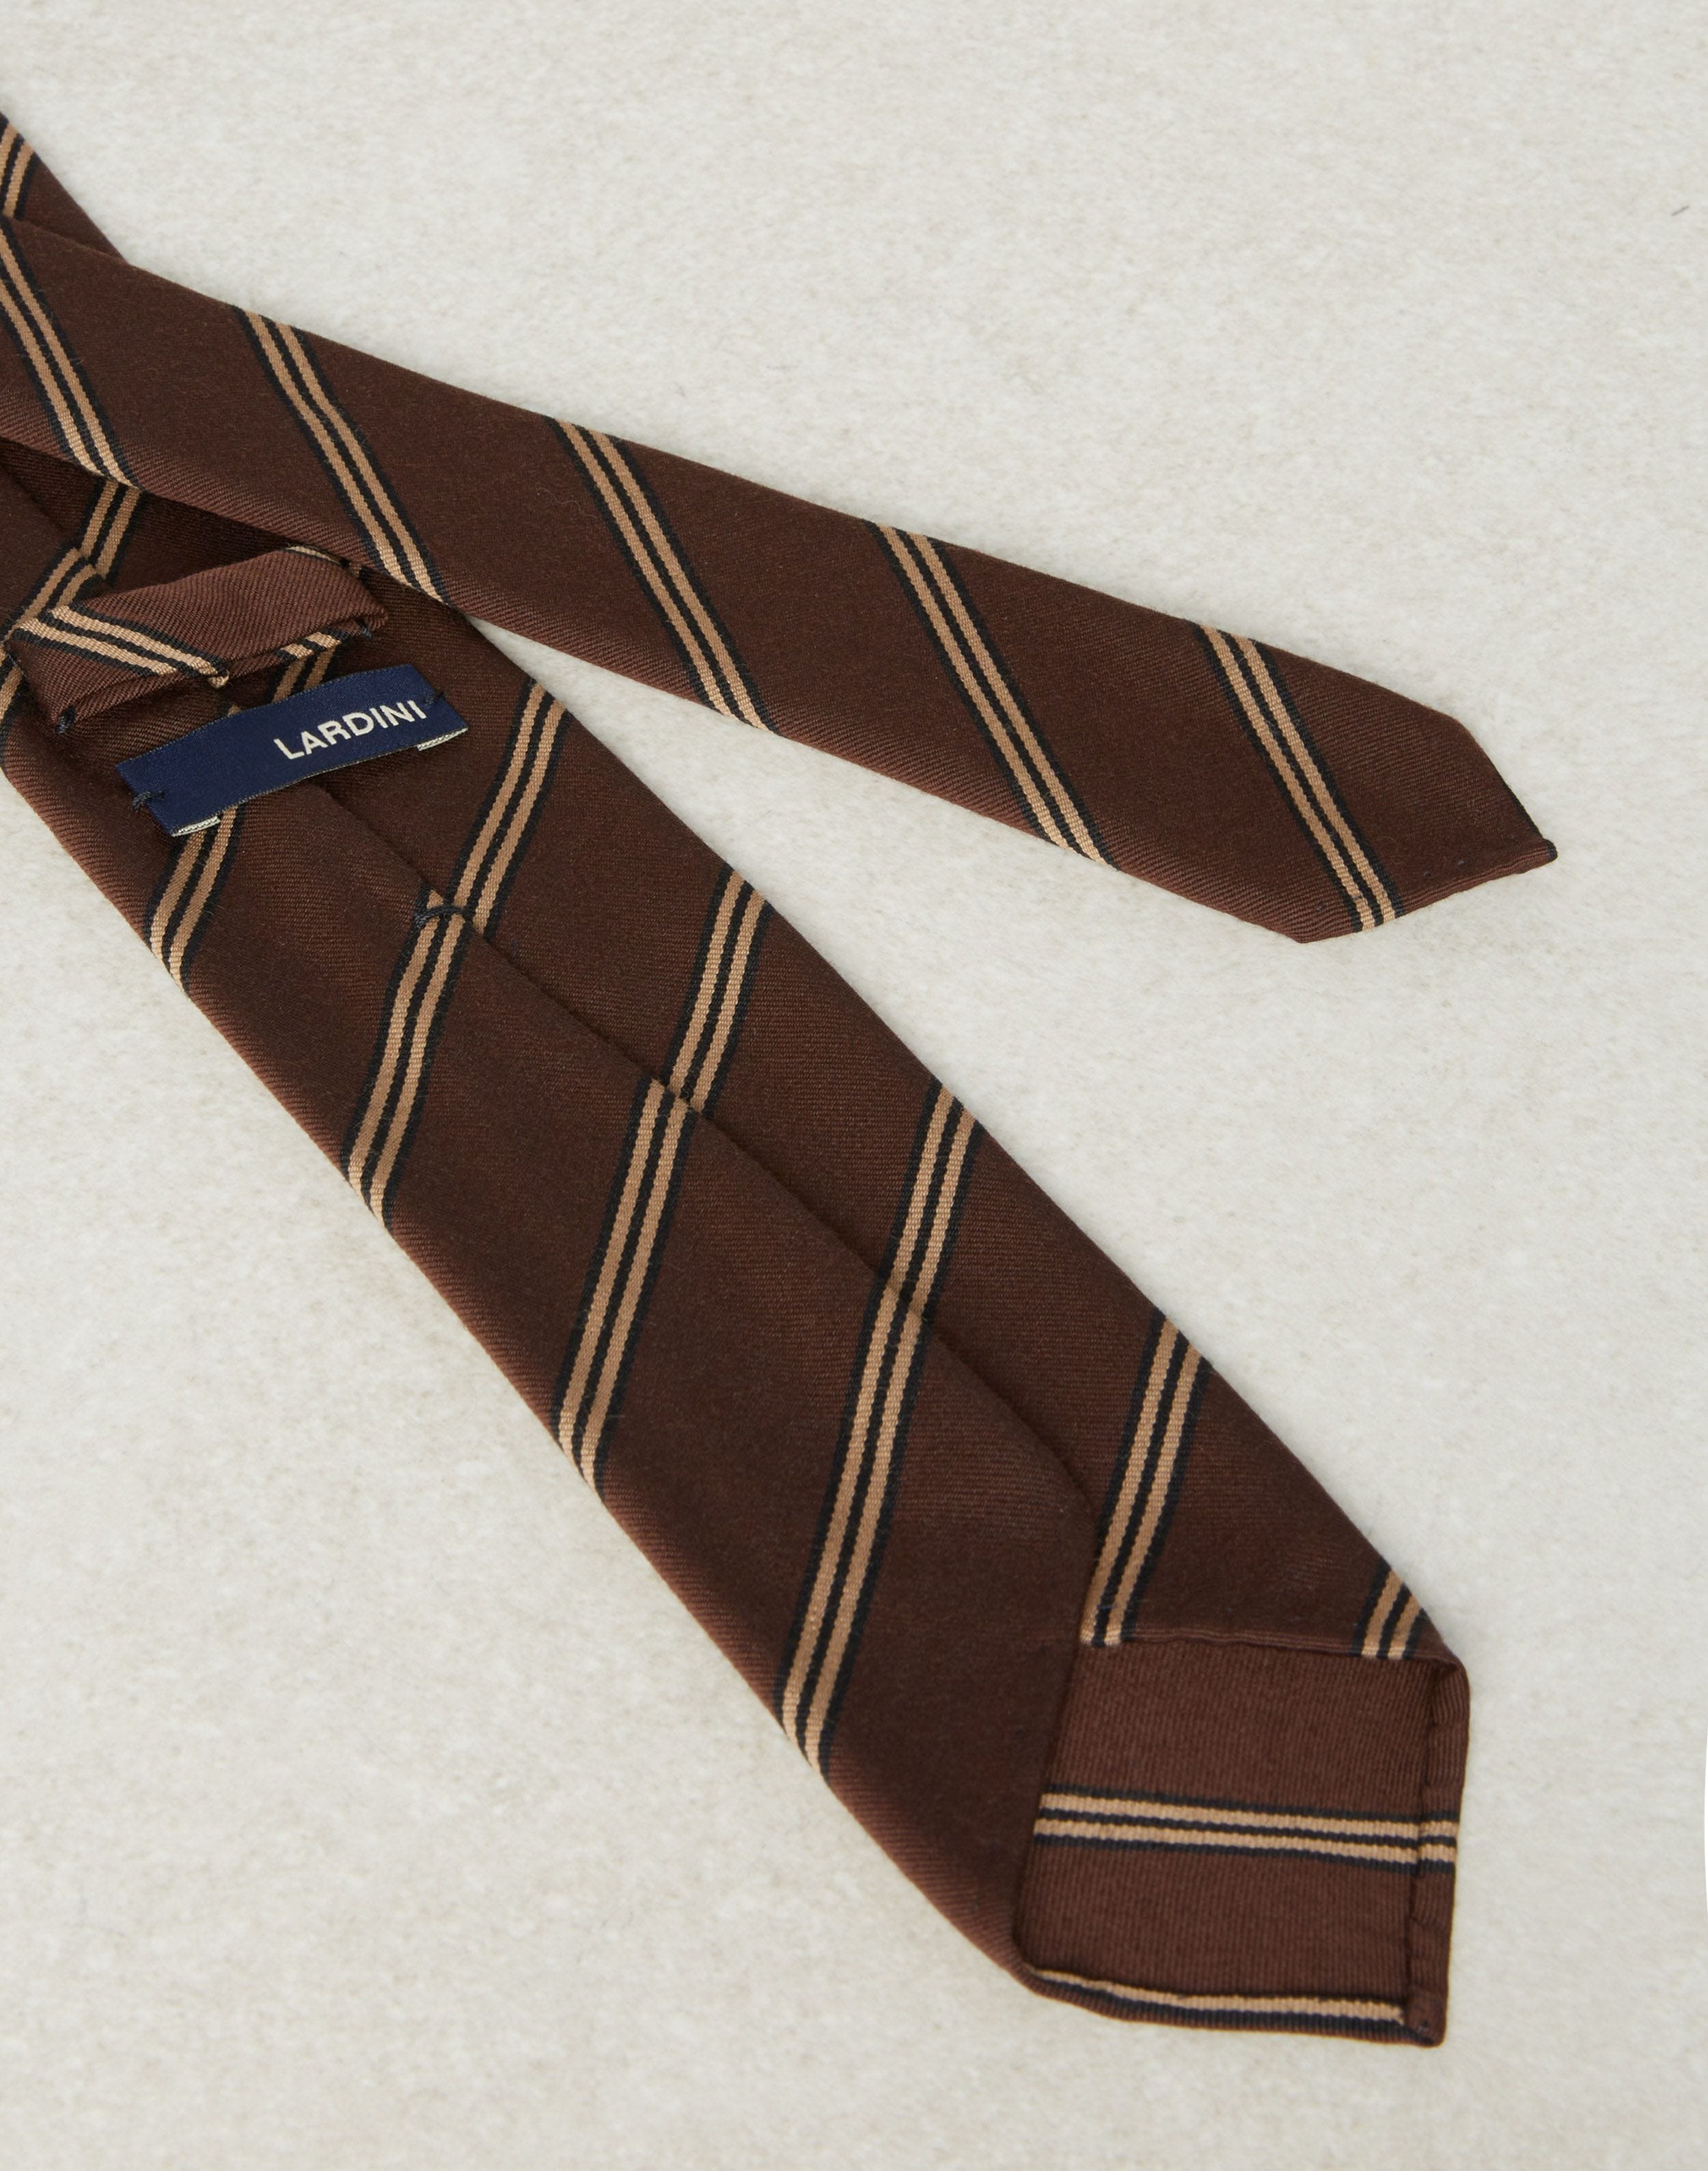 Regimental tie in brown silk